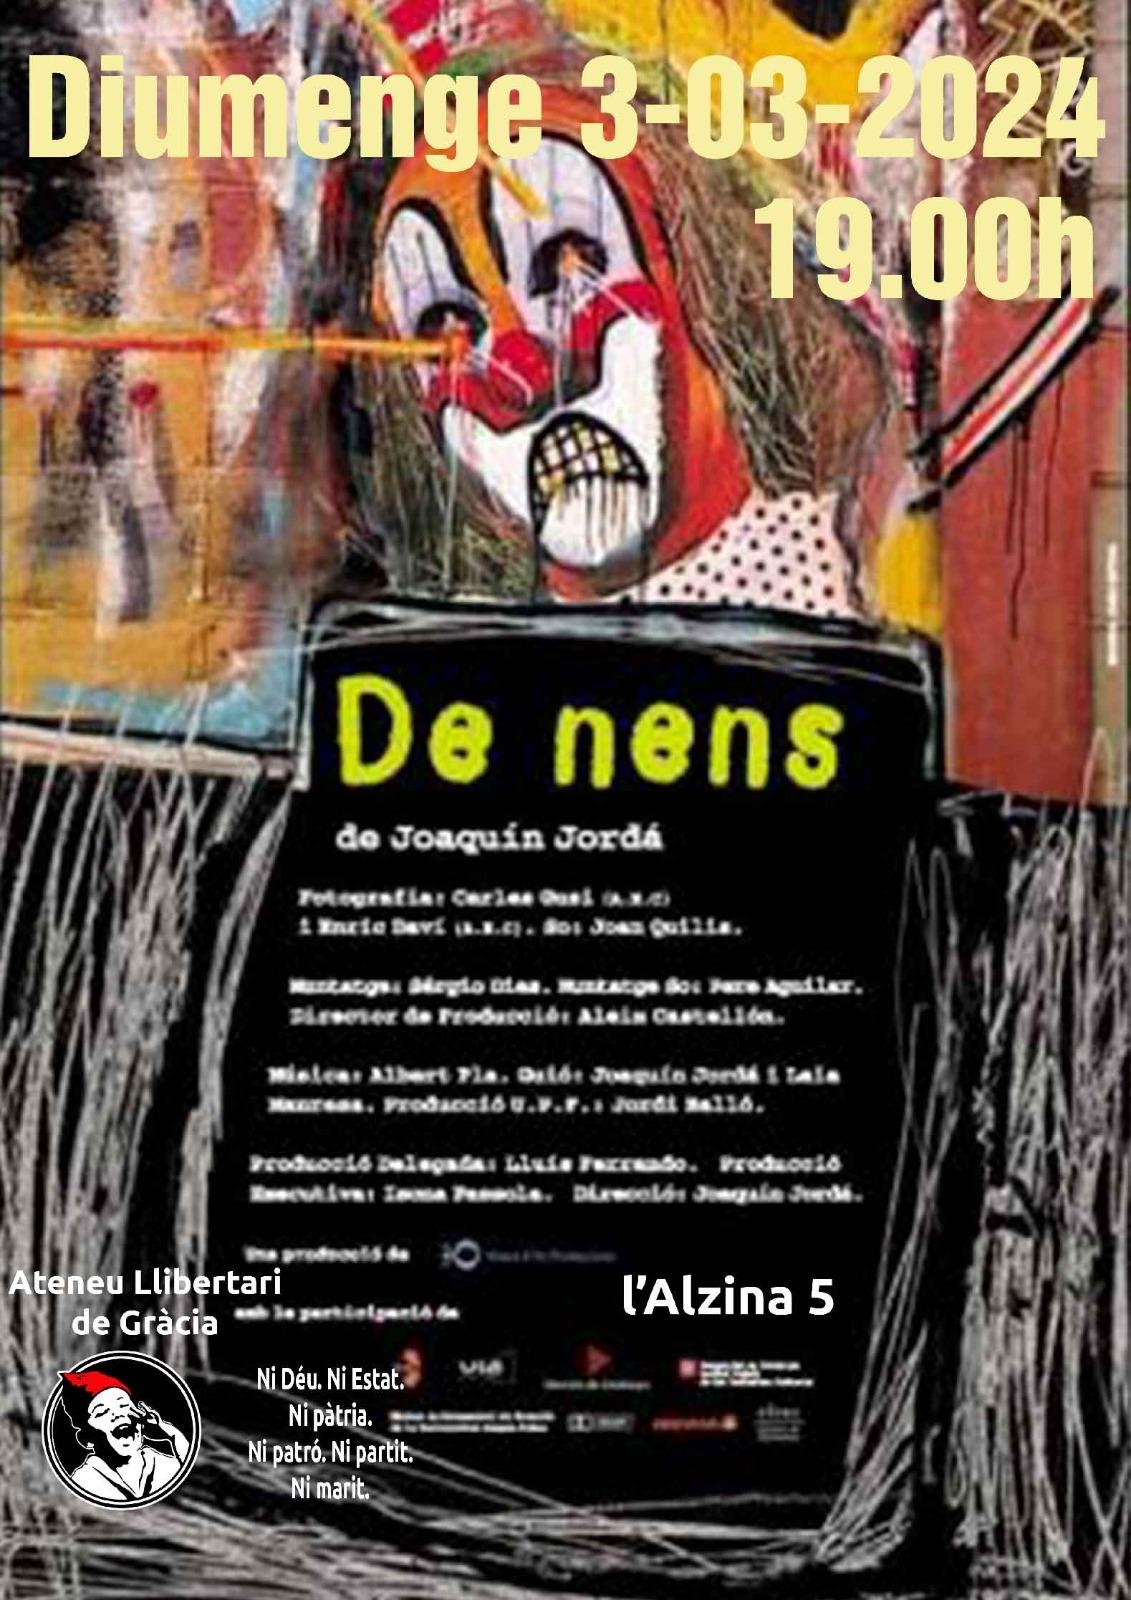 Cinefòrum: "DE NENS" 2003 (Documental)